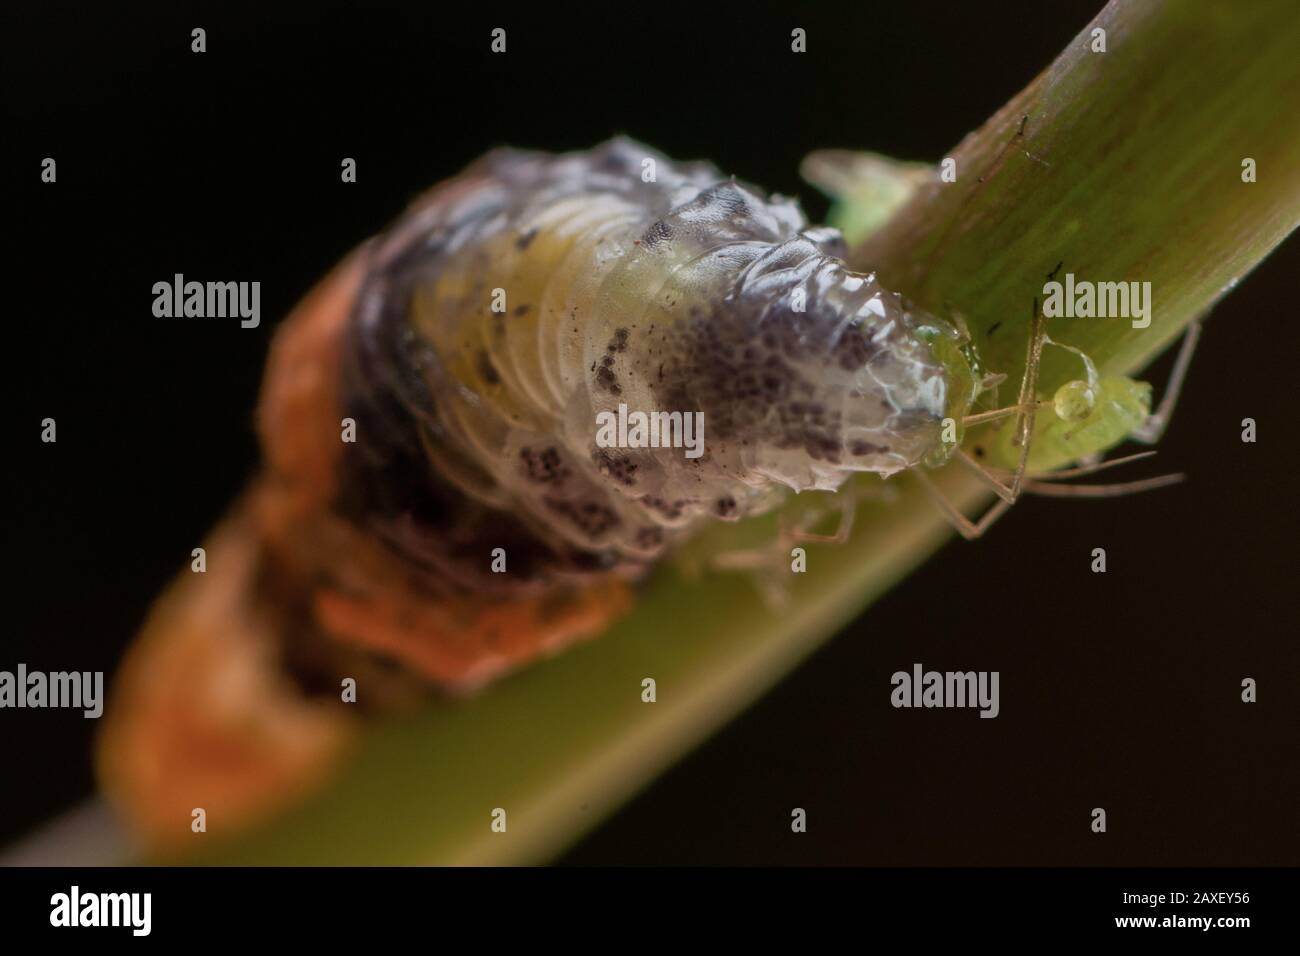 Larve einer Schwebefliege, die eine Blattläuse, eine Syrphide, isst, die als Insektenpest in Gärten eingesetzt werden kann Stockfoto